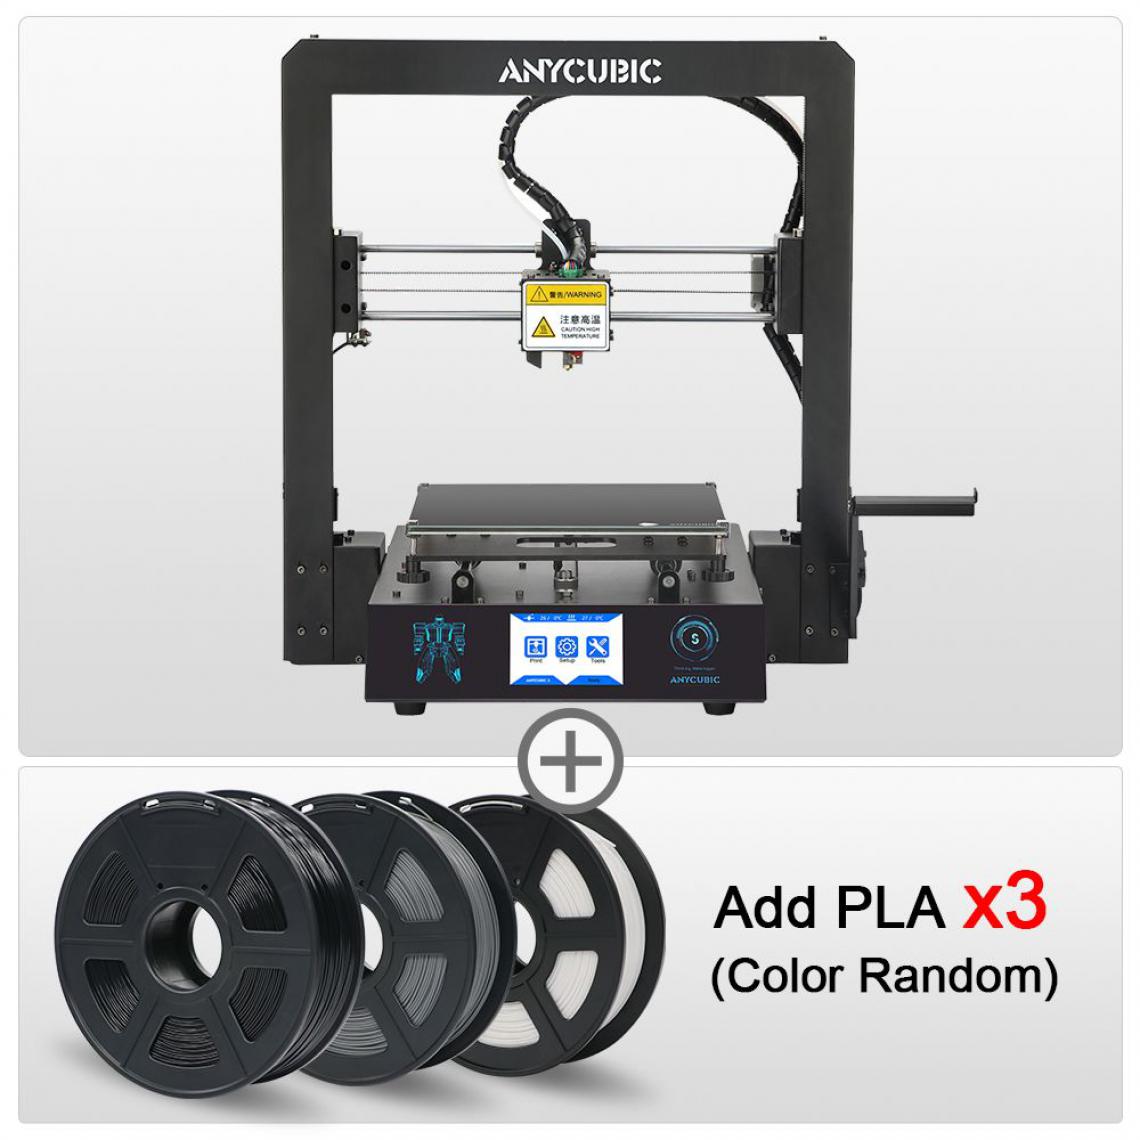 Generic - Imprimante 3D ANYCUBIC i3 Mega S  avec à 1 Tête d'Impression  PLA, ABS, TPU,PETG et Cadre Entièrement Métallique et 3 Filaments 21 * 21 * 20.5 cm - Noir  - Imprimante 3D